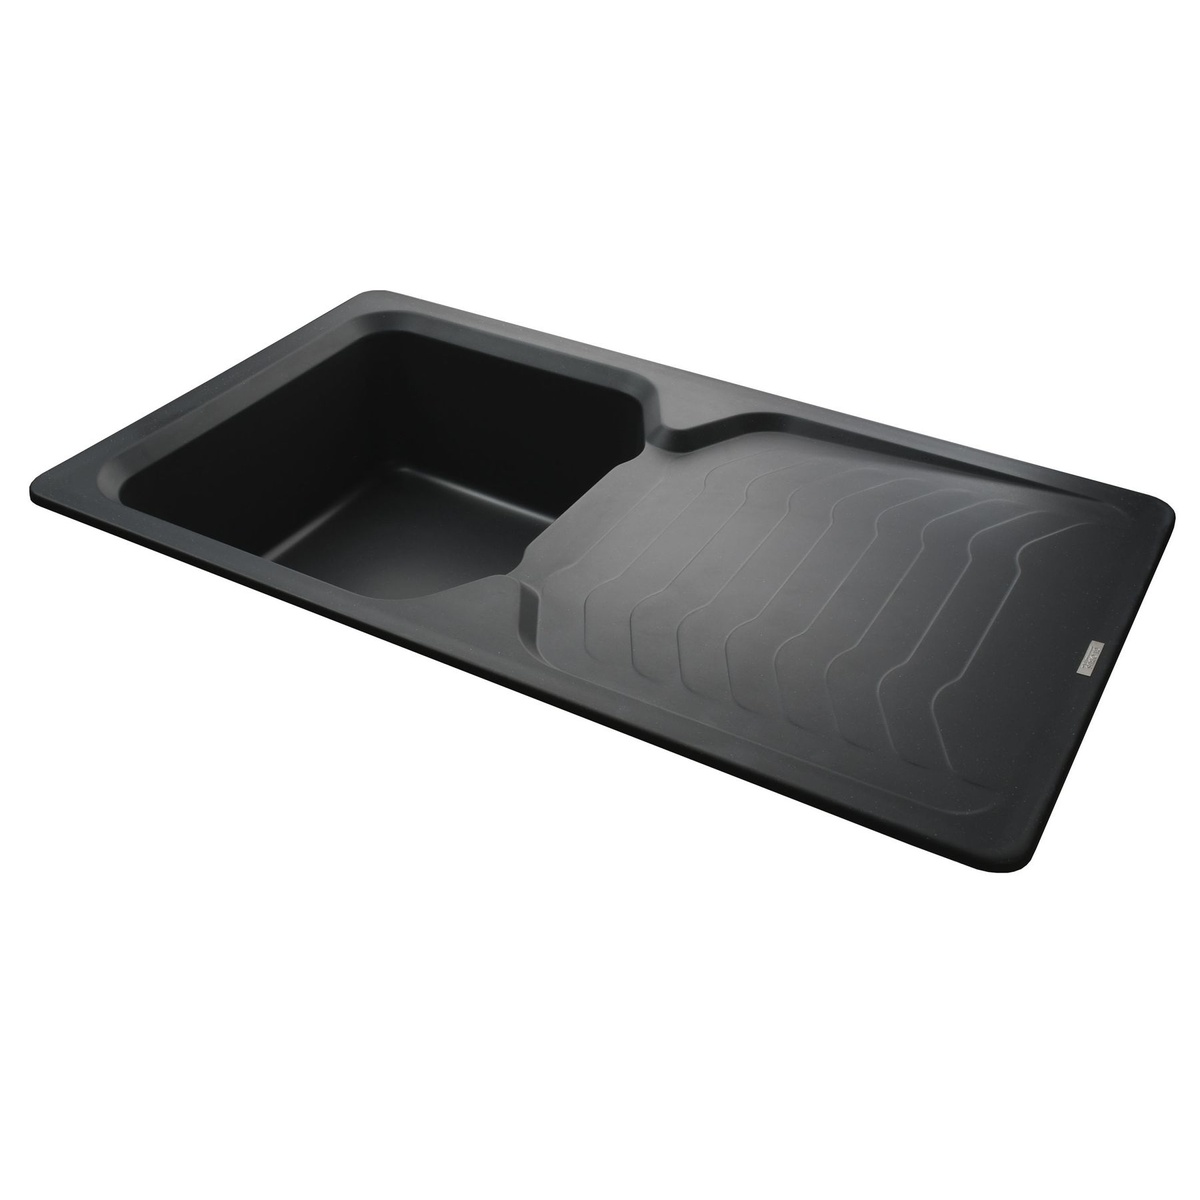 Кухонная мойка керамическая прямоугольная GLOBUS LUX BOREN 500мм x 860мм черный без сифона 000008488